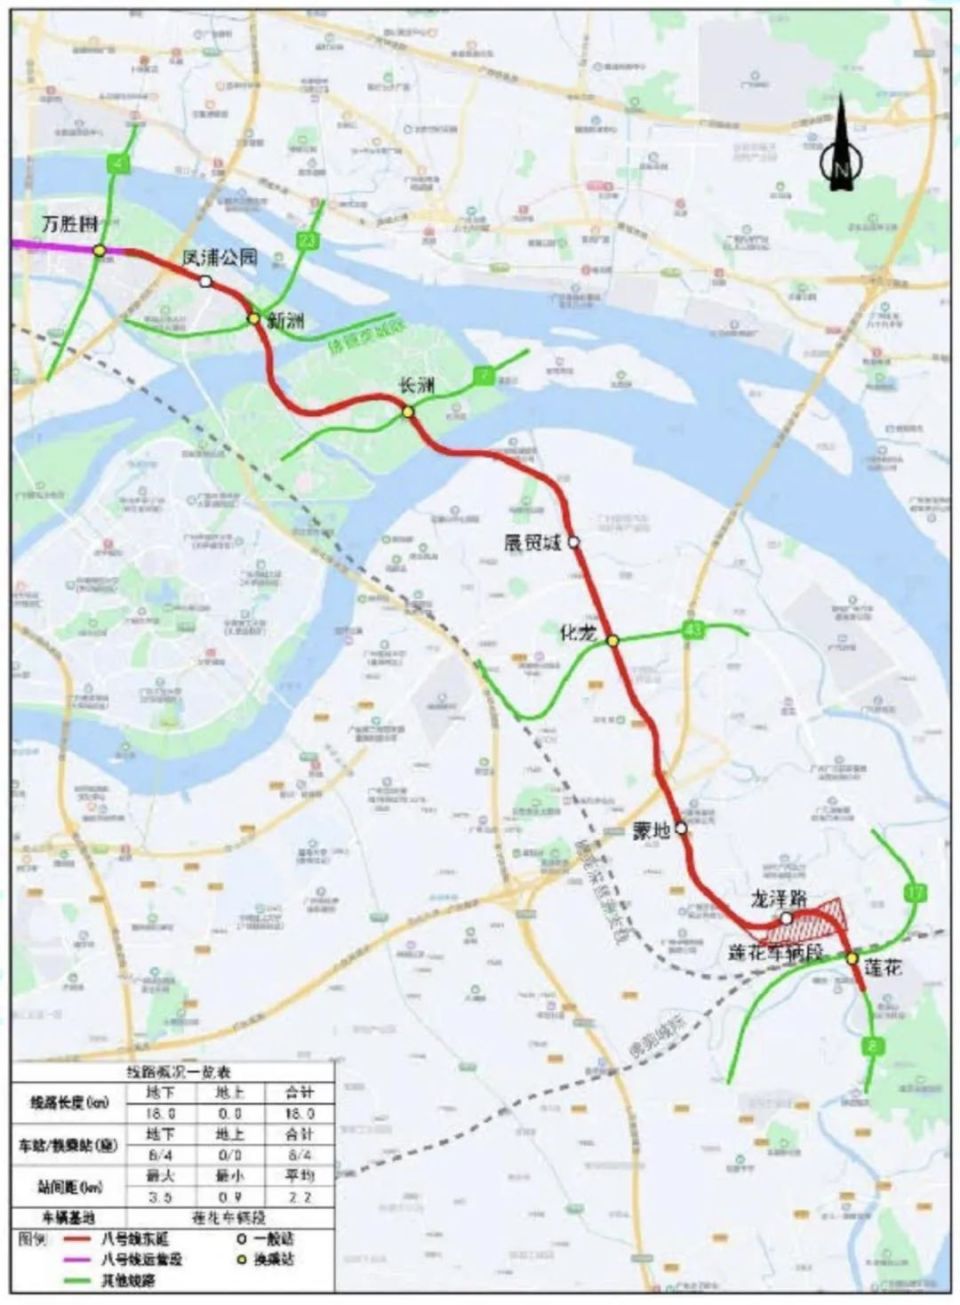 广州地铁11号线进度图片